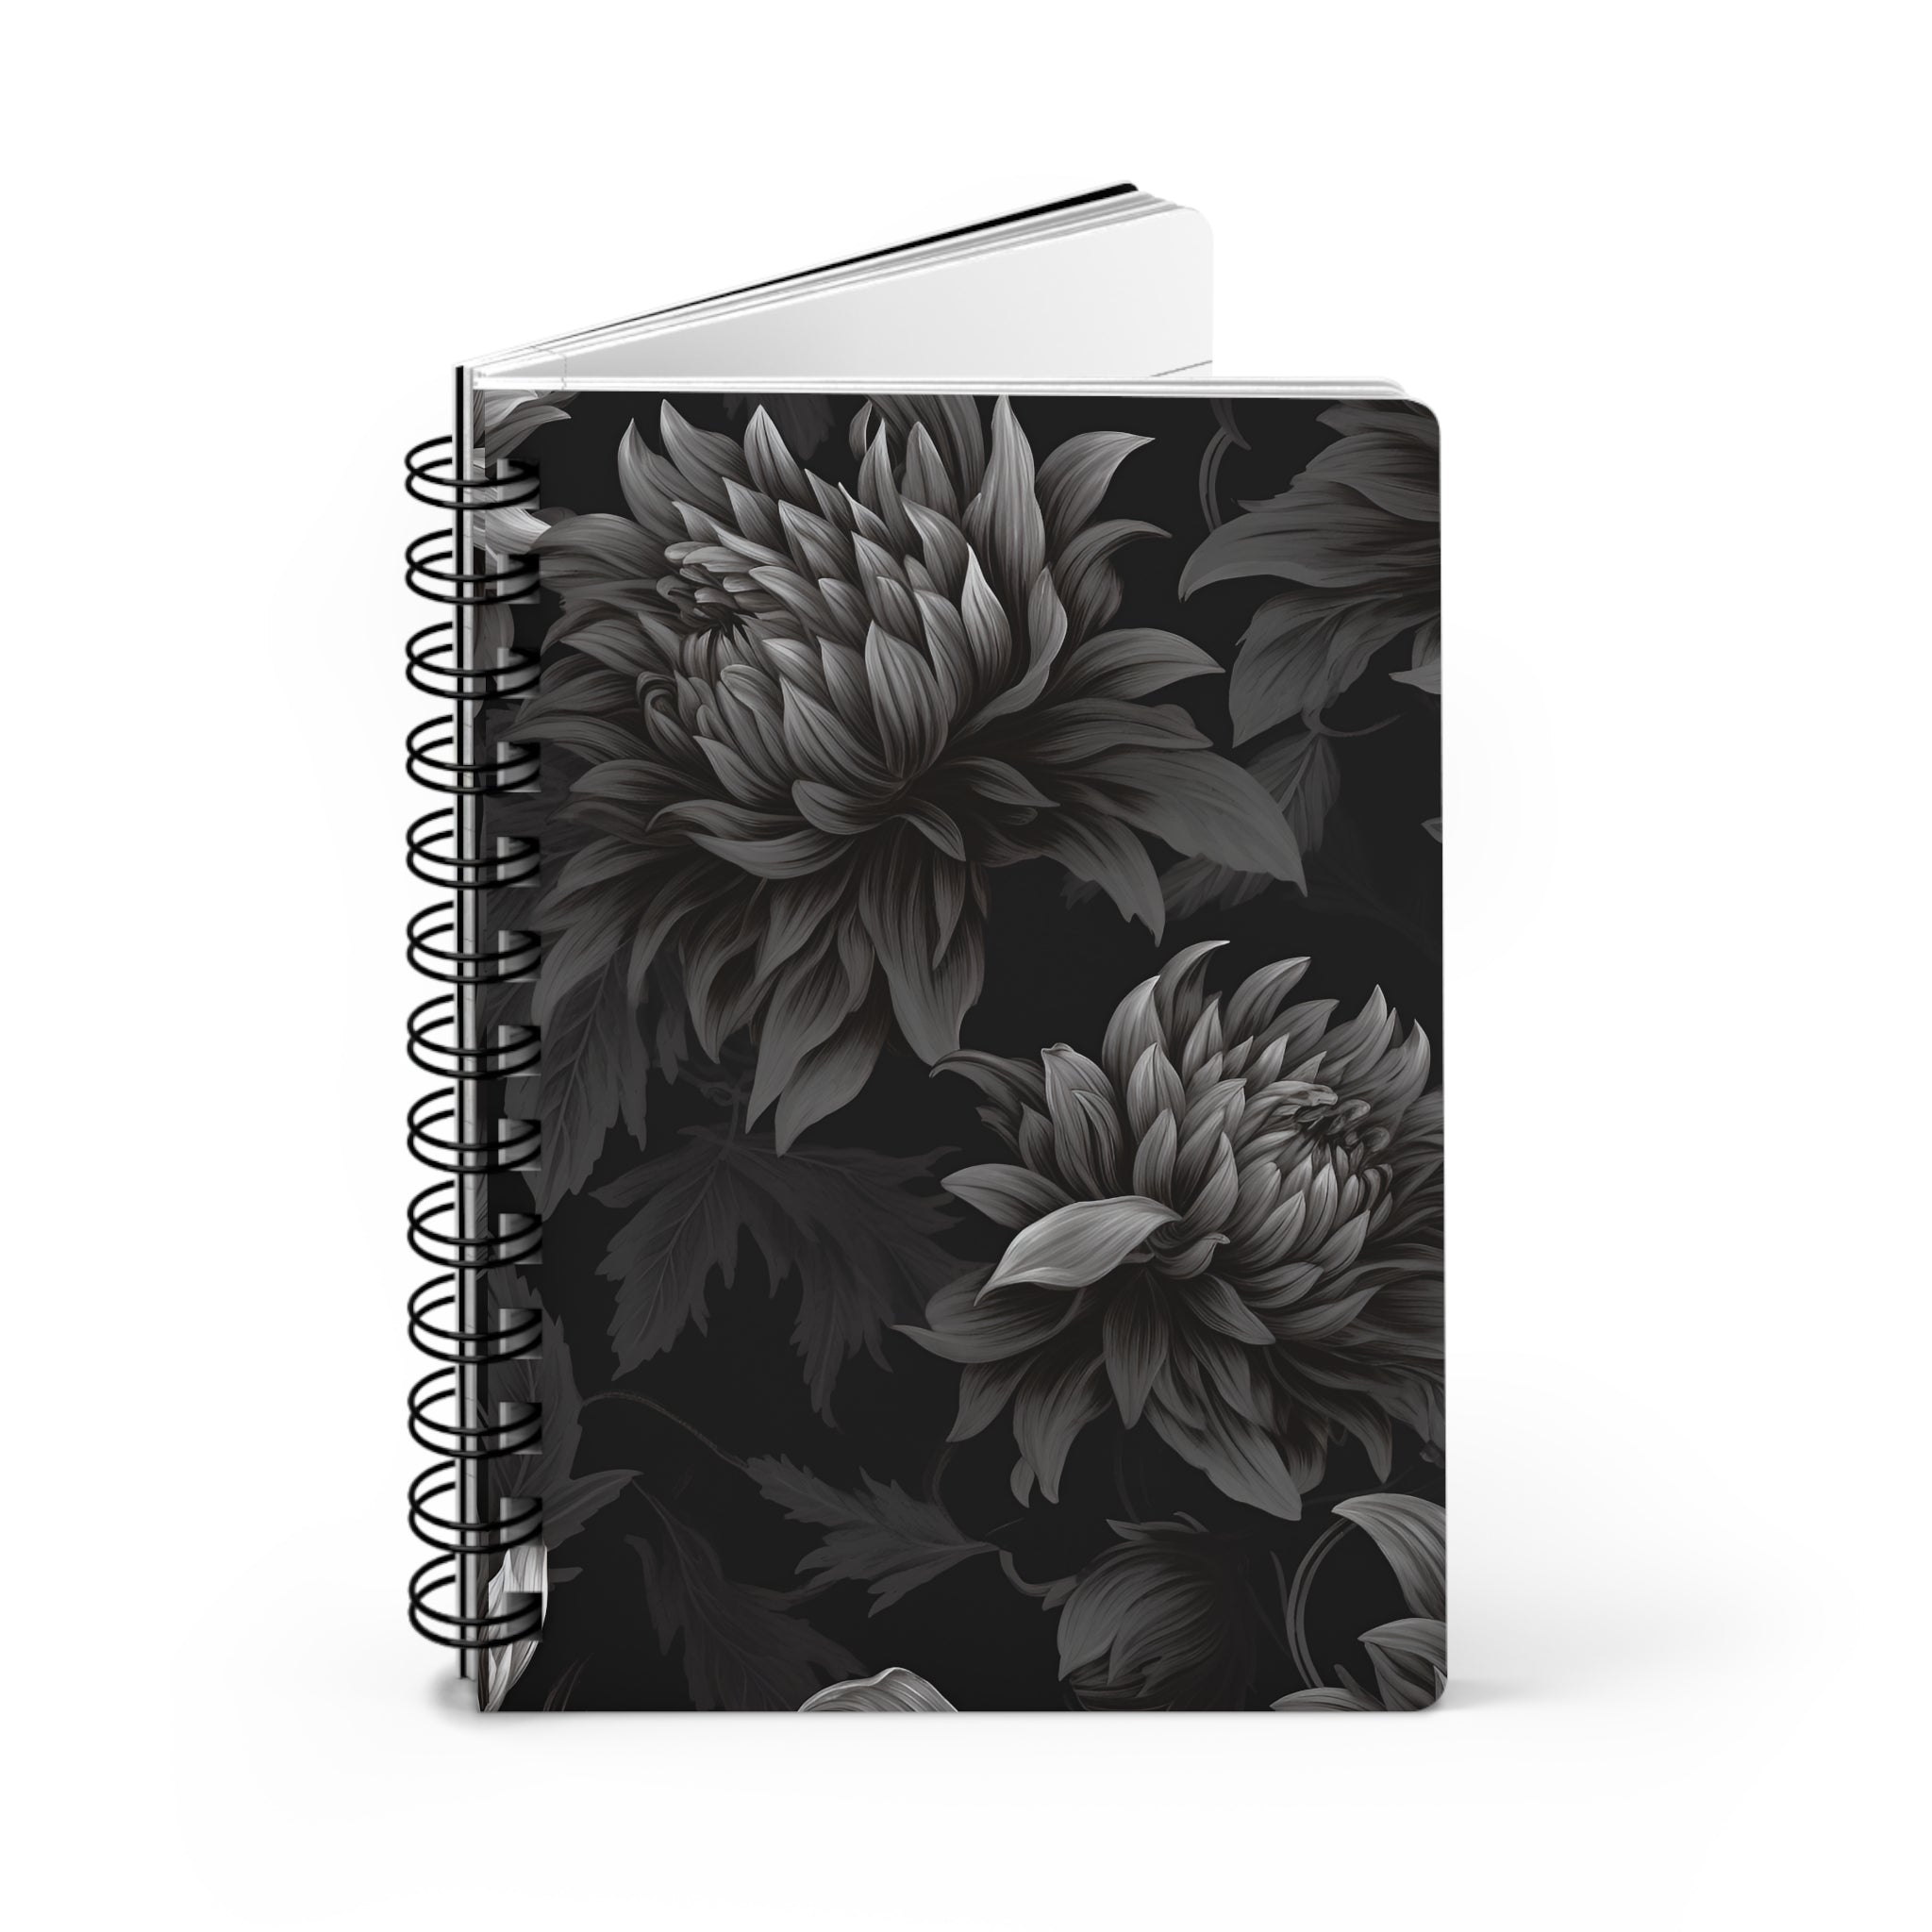 Midnight Black Dahlia Spiral Notebook, 5 x 7 inch